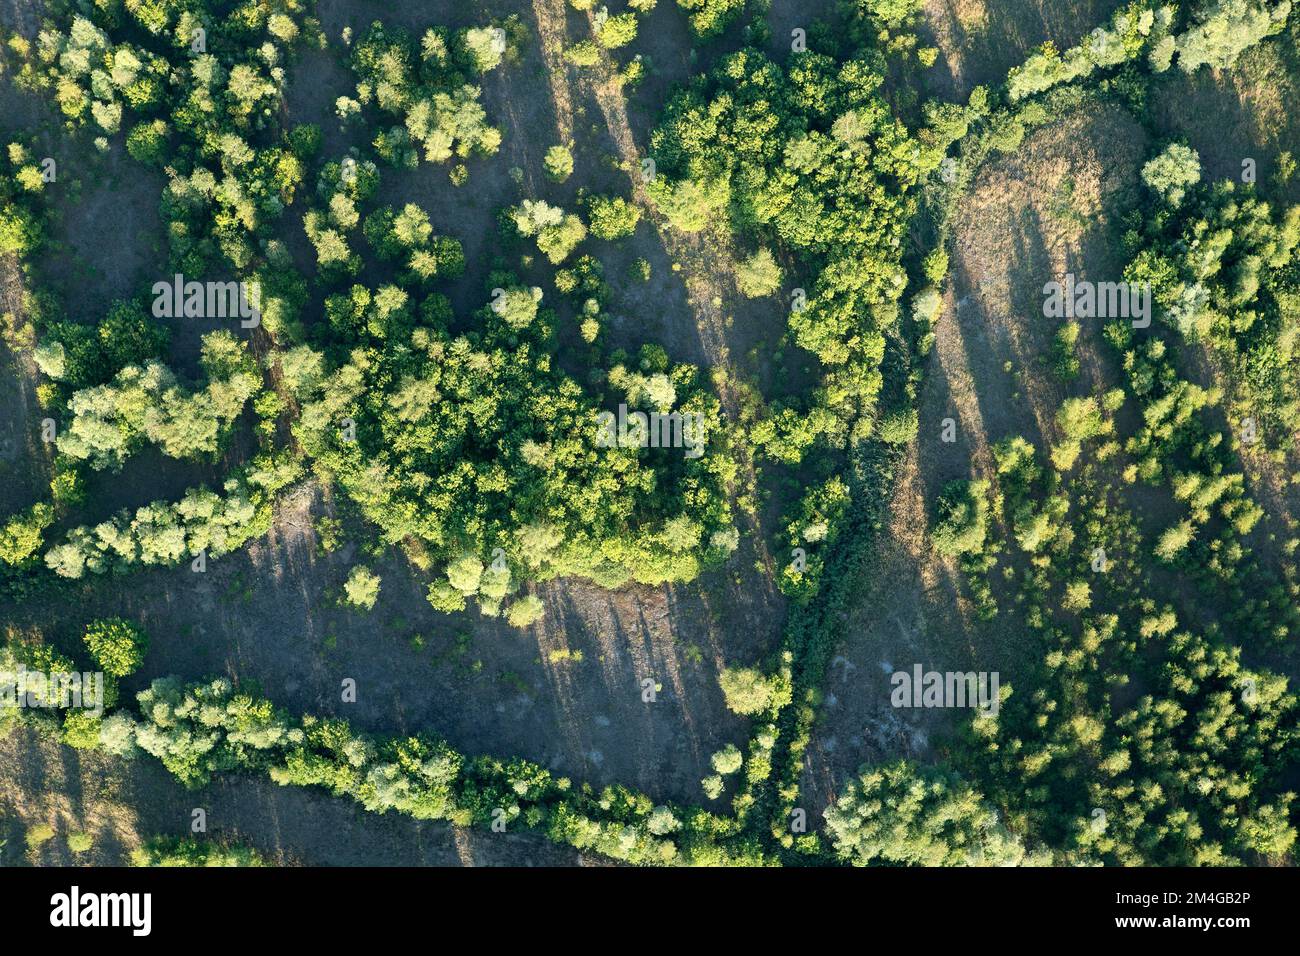 Nature reserve Verrebroekse plassen, aerial view, Belgium, Antwerp Stock Photo